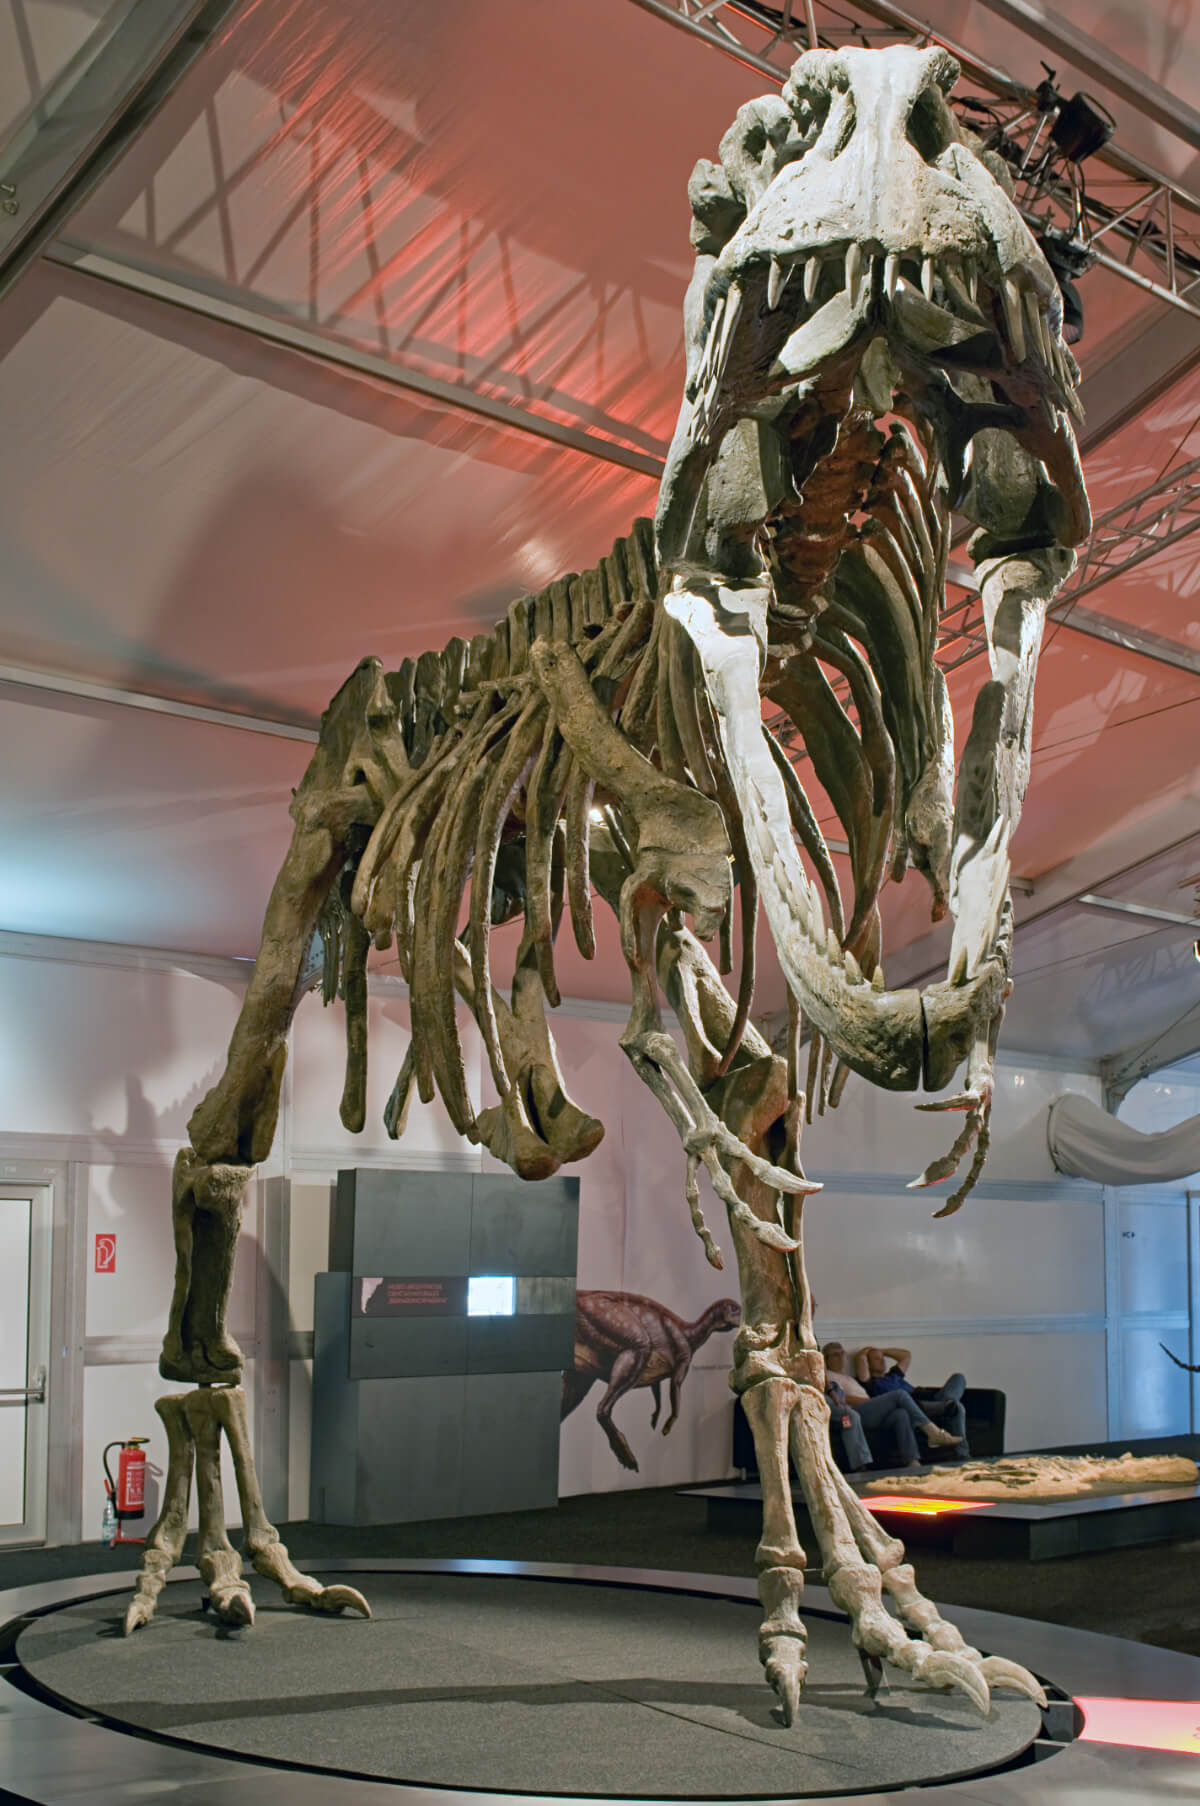 ギガノトサウルス | 恐竜図鑑